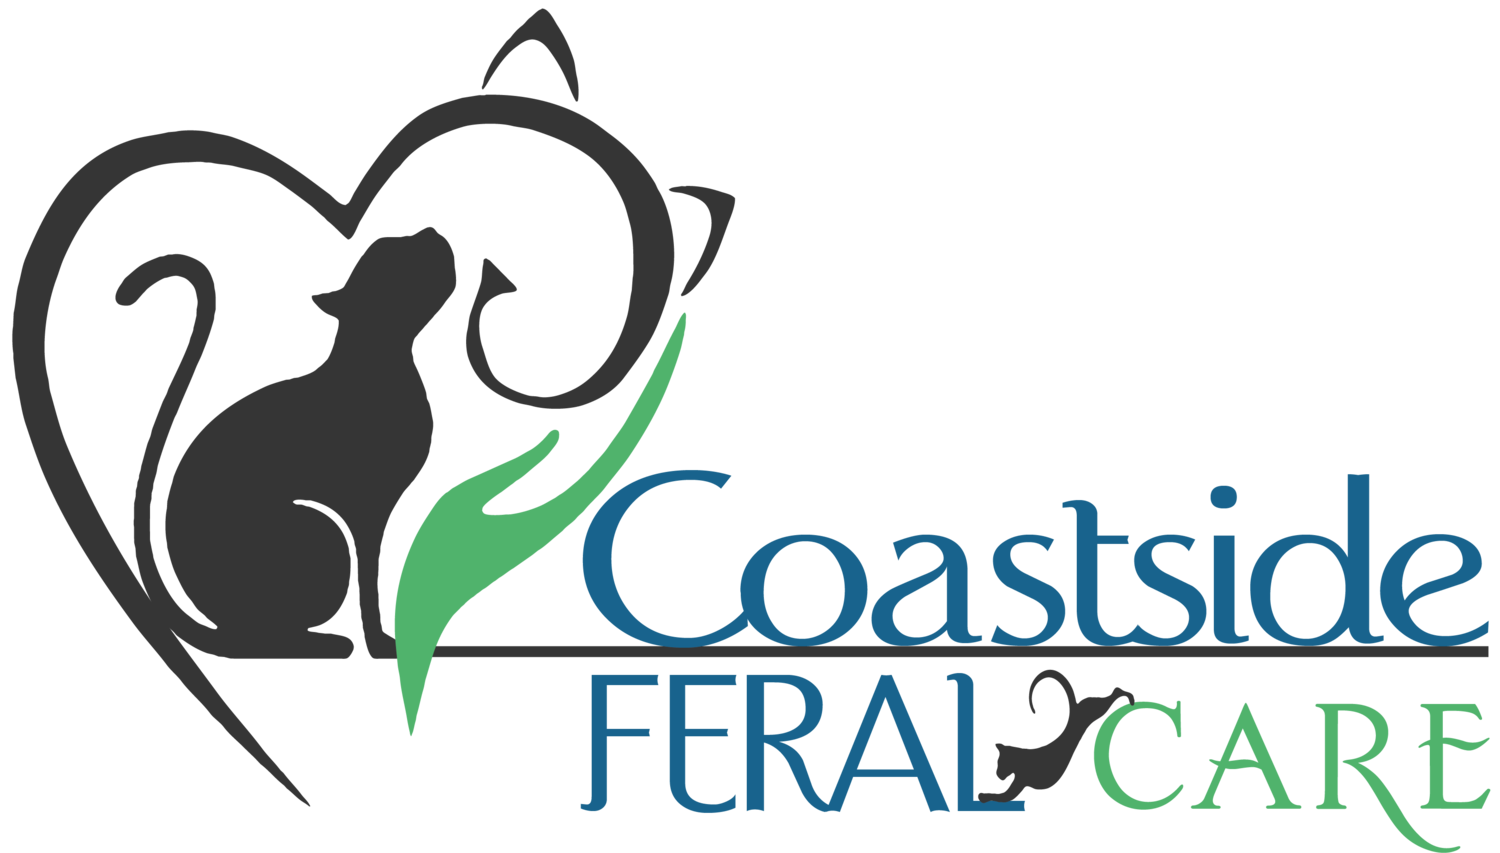 Coastside Feral Care